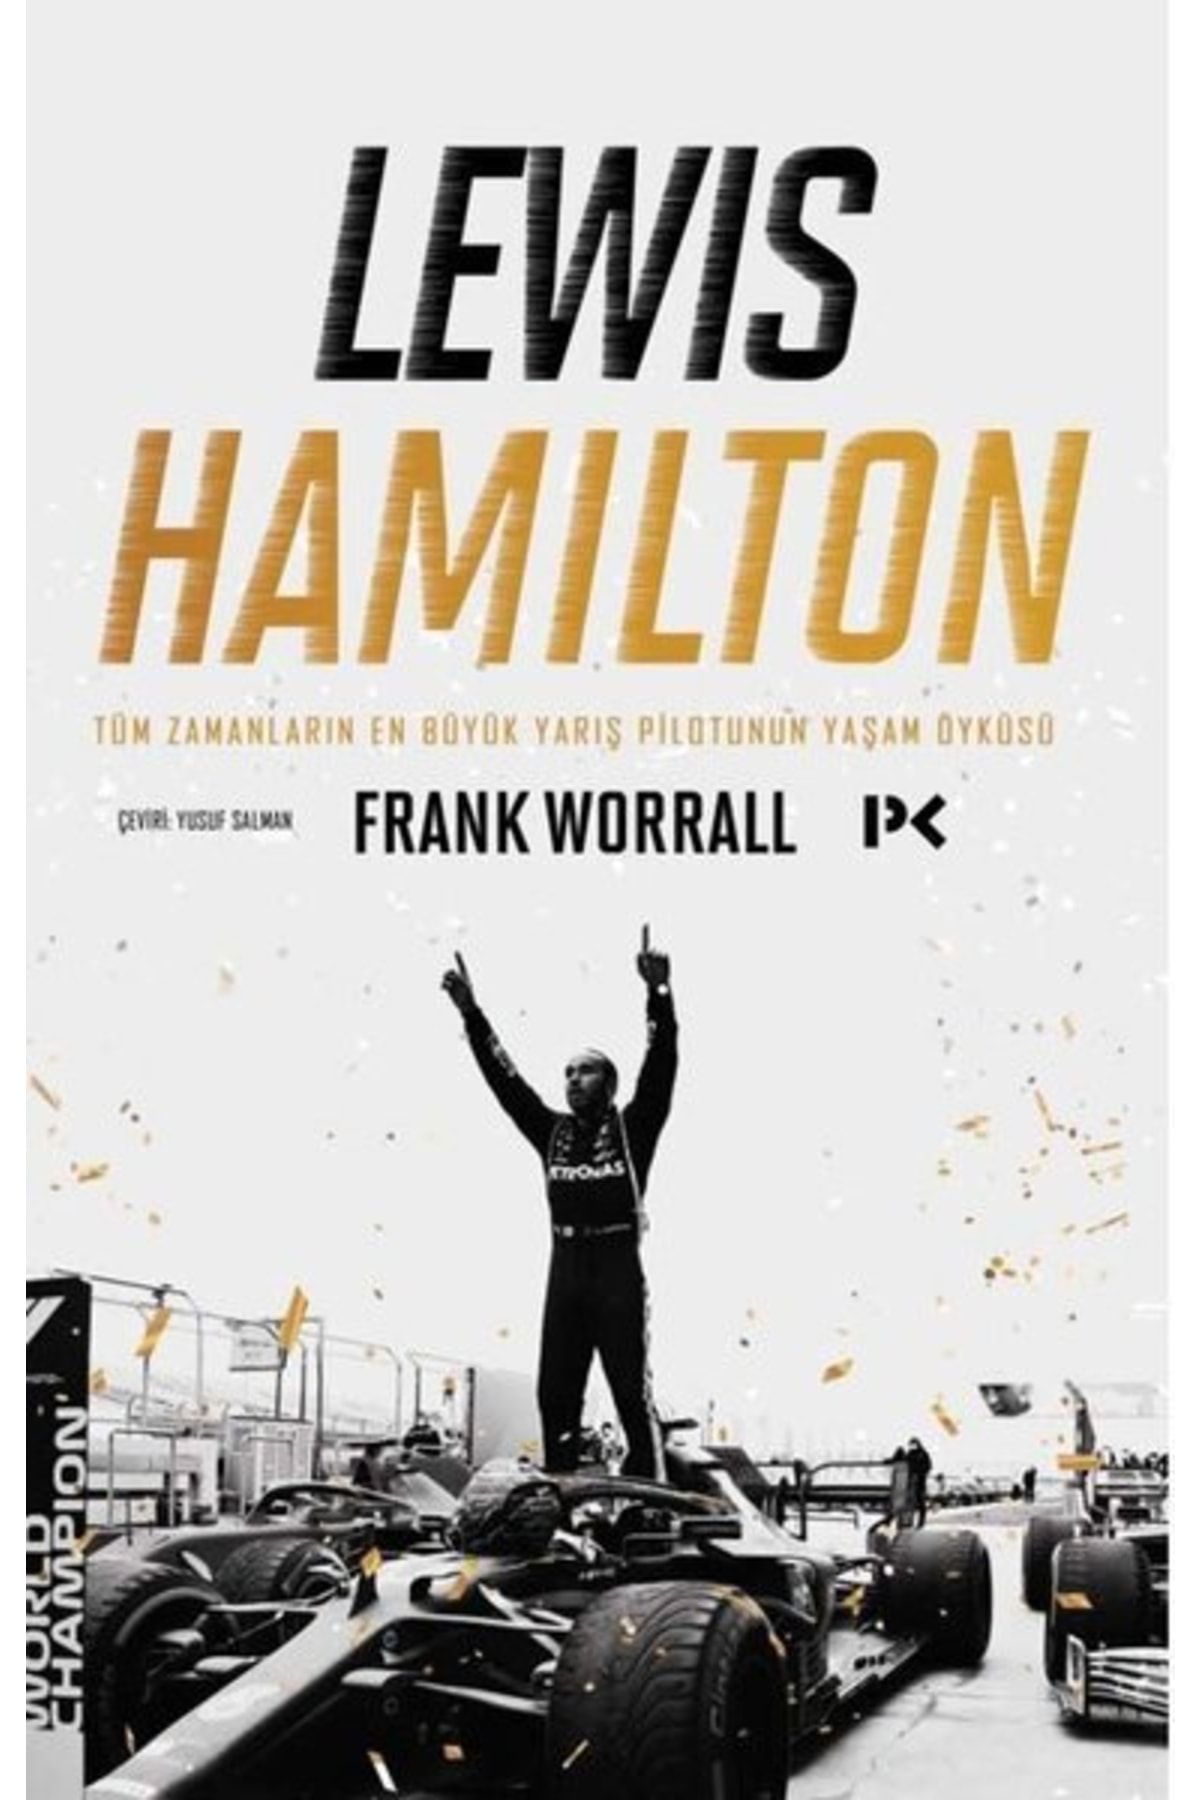 Profil Kitap Lewis Hamilton Tüm Zamanların En Büyük Yarış Pilotunun Yaşam Öyküsü Frank Worrall